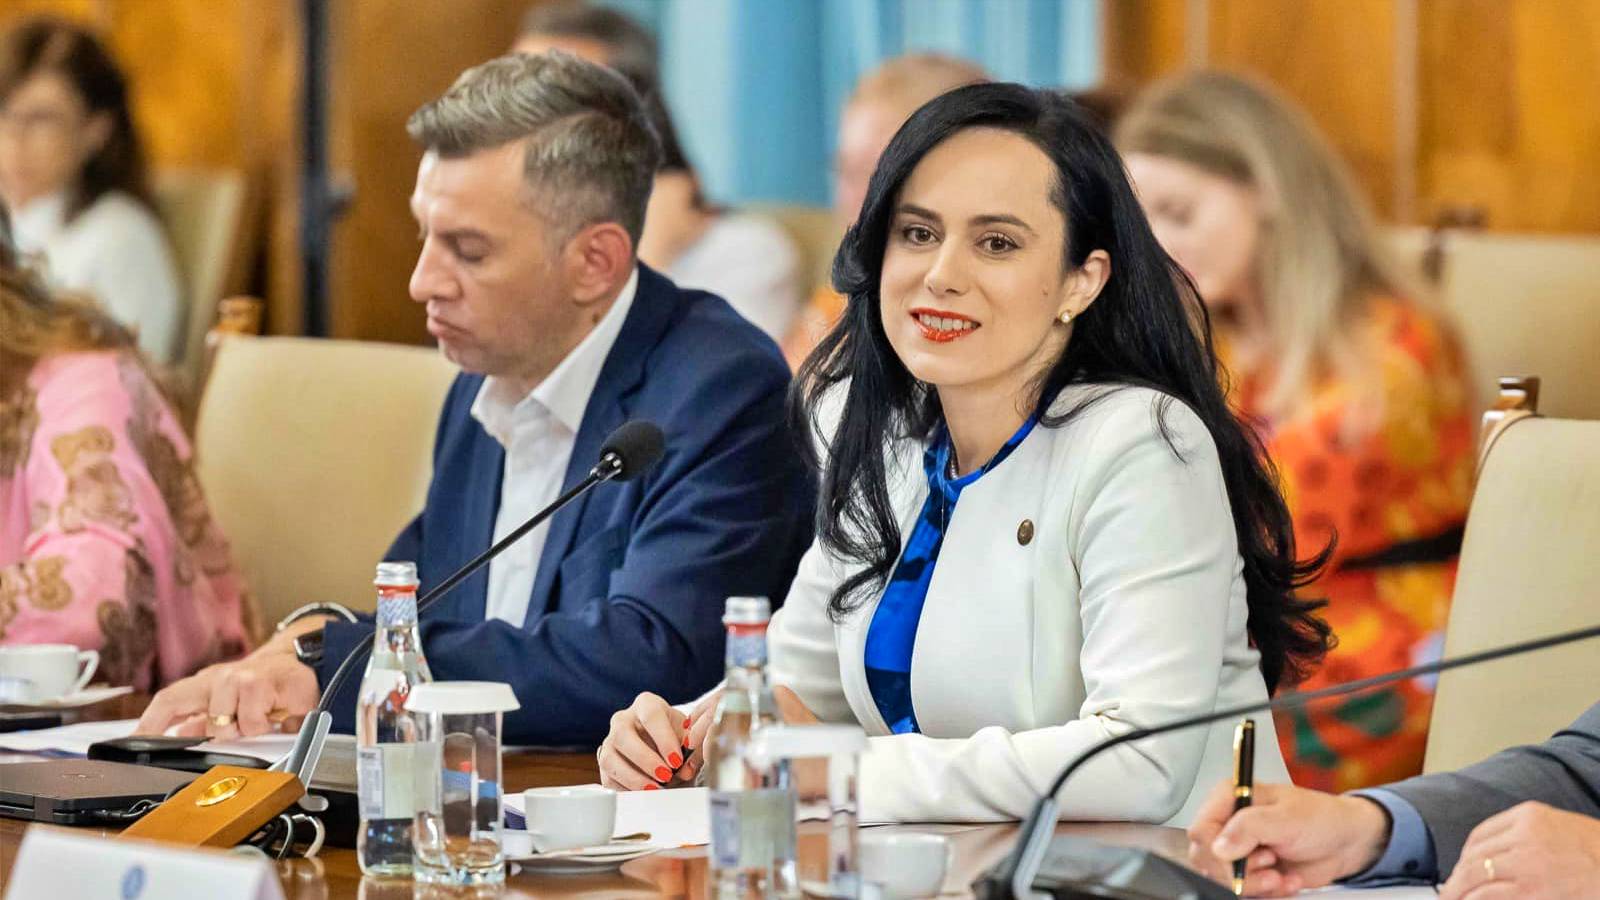 Oficjalne memorandum Ministra Pracy W OSTATNIEJ CHWILI Ukończono Rumunia Simona-Bucura Oprescu